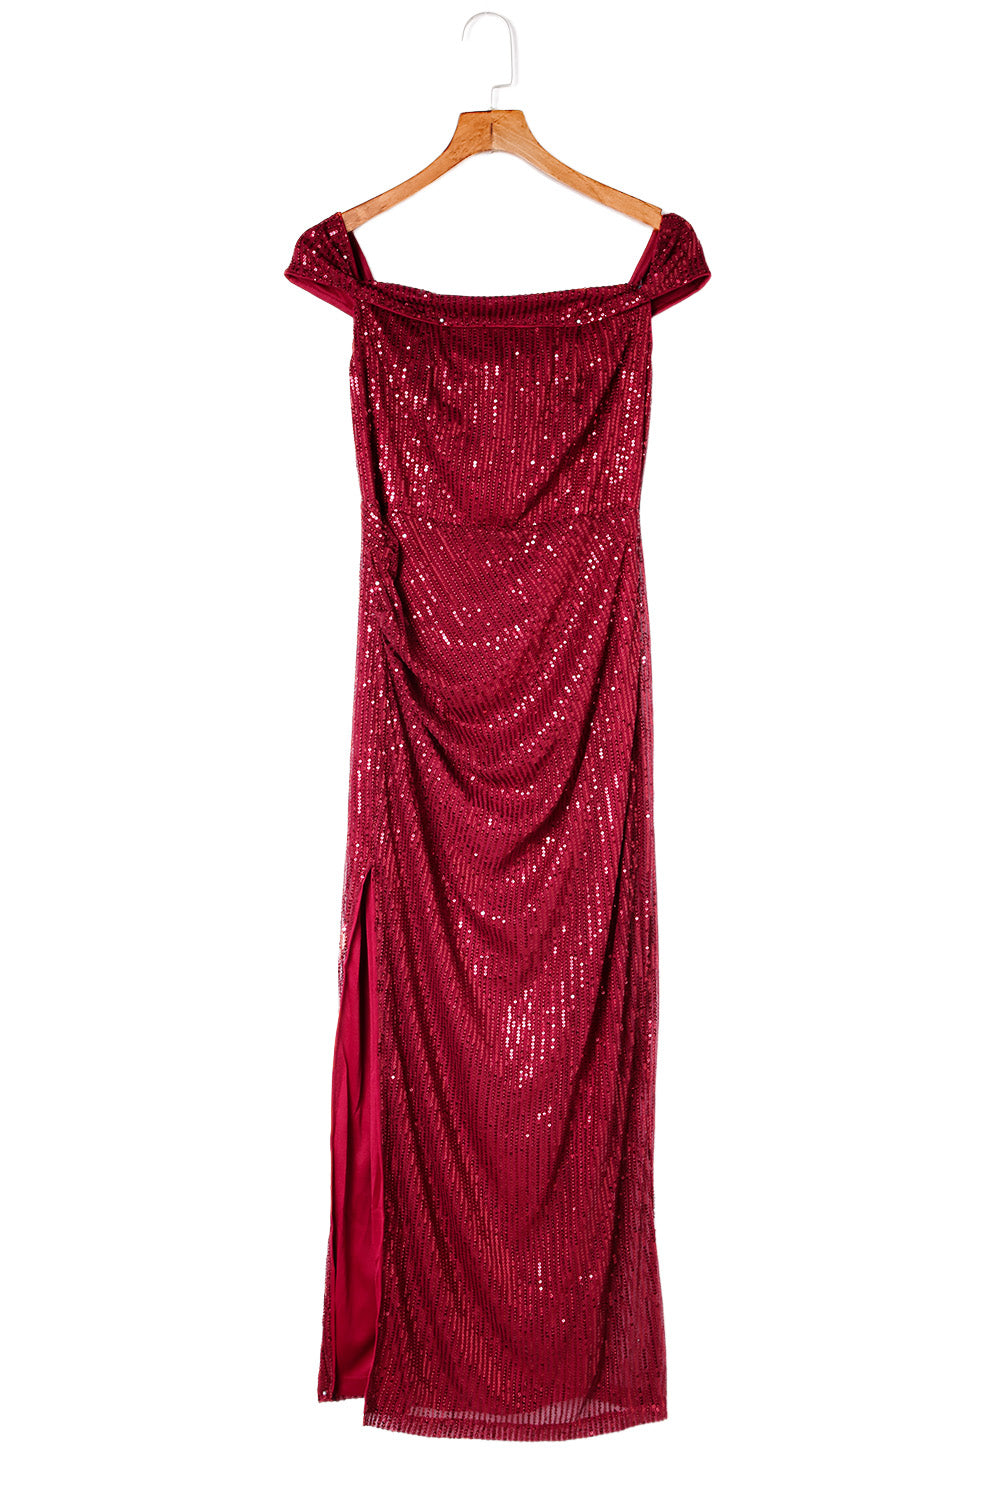 Red Off Shoulder Side Slit Bodycon Sequin Dress